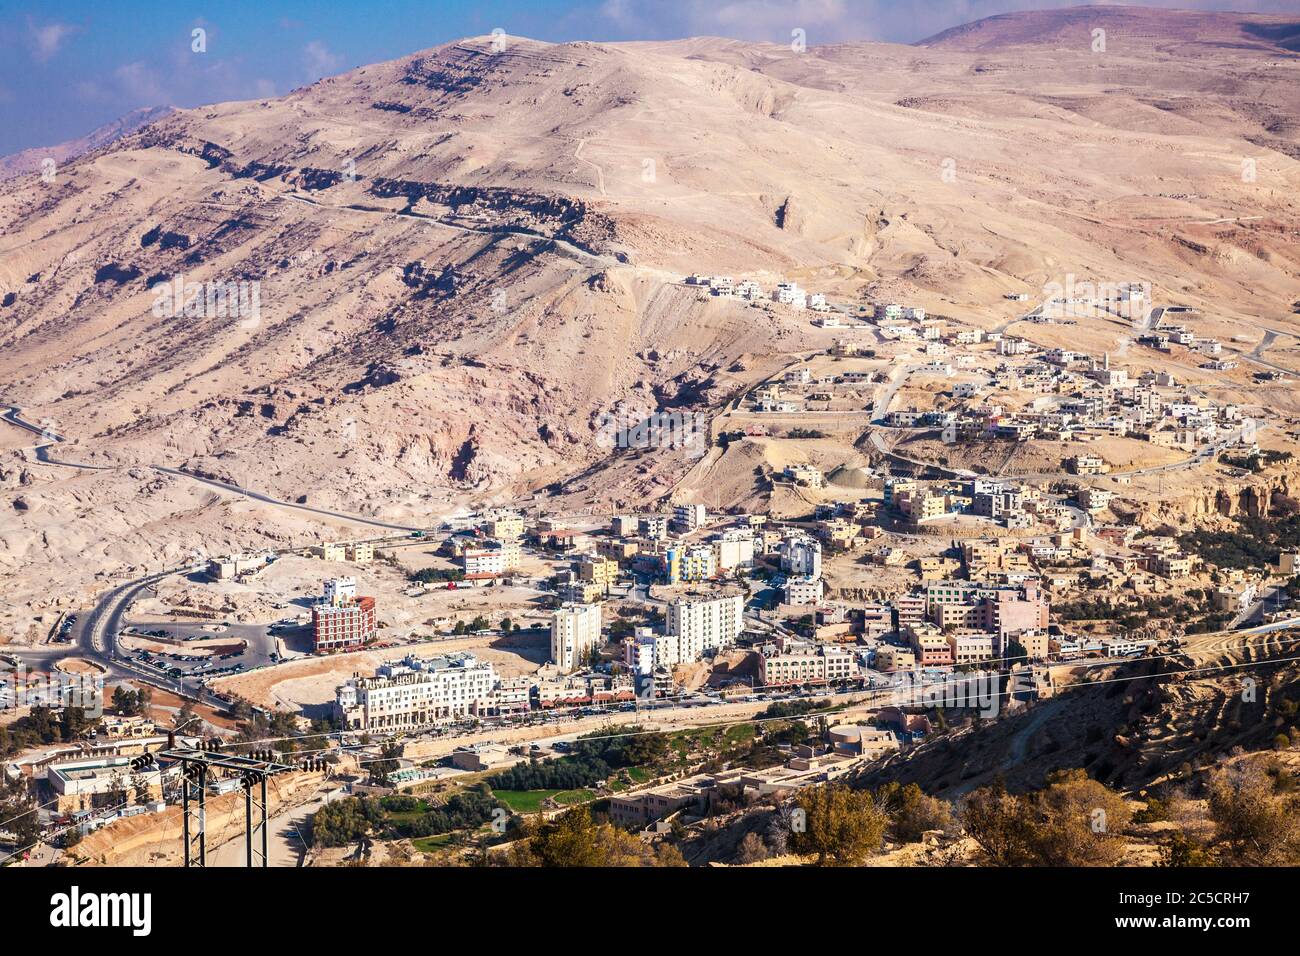 Die alte Handelsroute, die als der King's Highway zwischen Aqaba und Petra in Jordanien bekannt ist, über einer kleinen Siedlung. Stockfoto